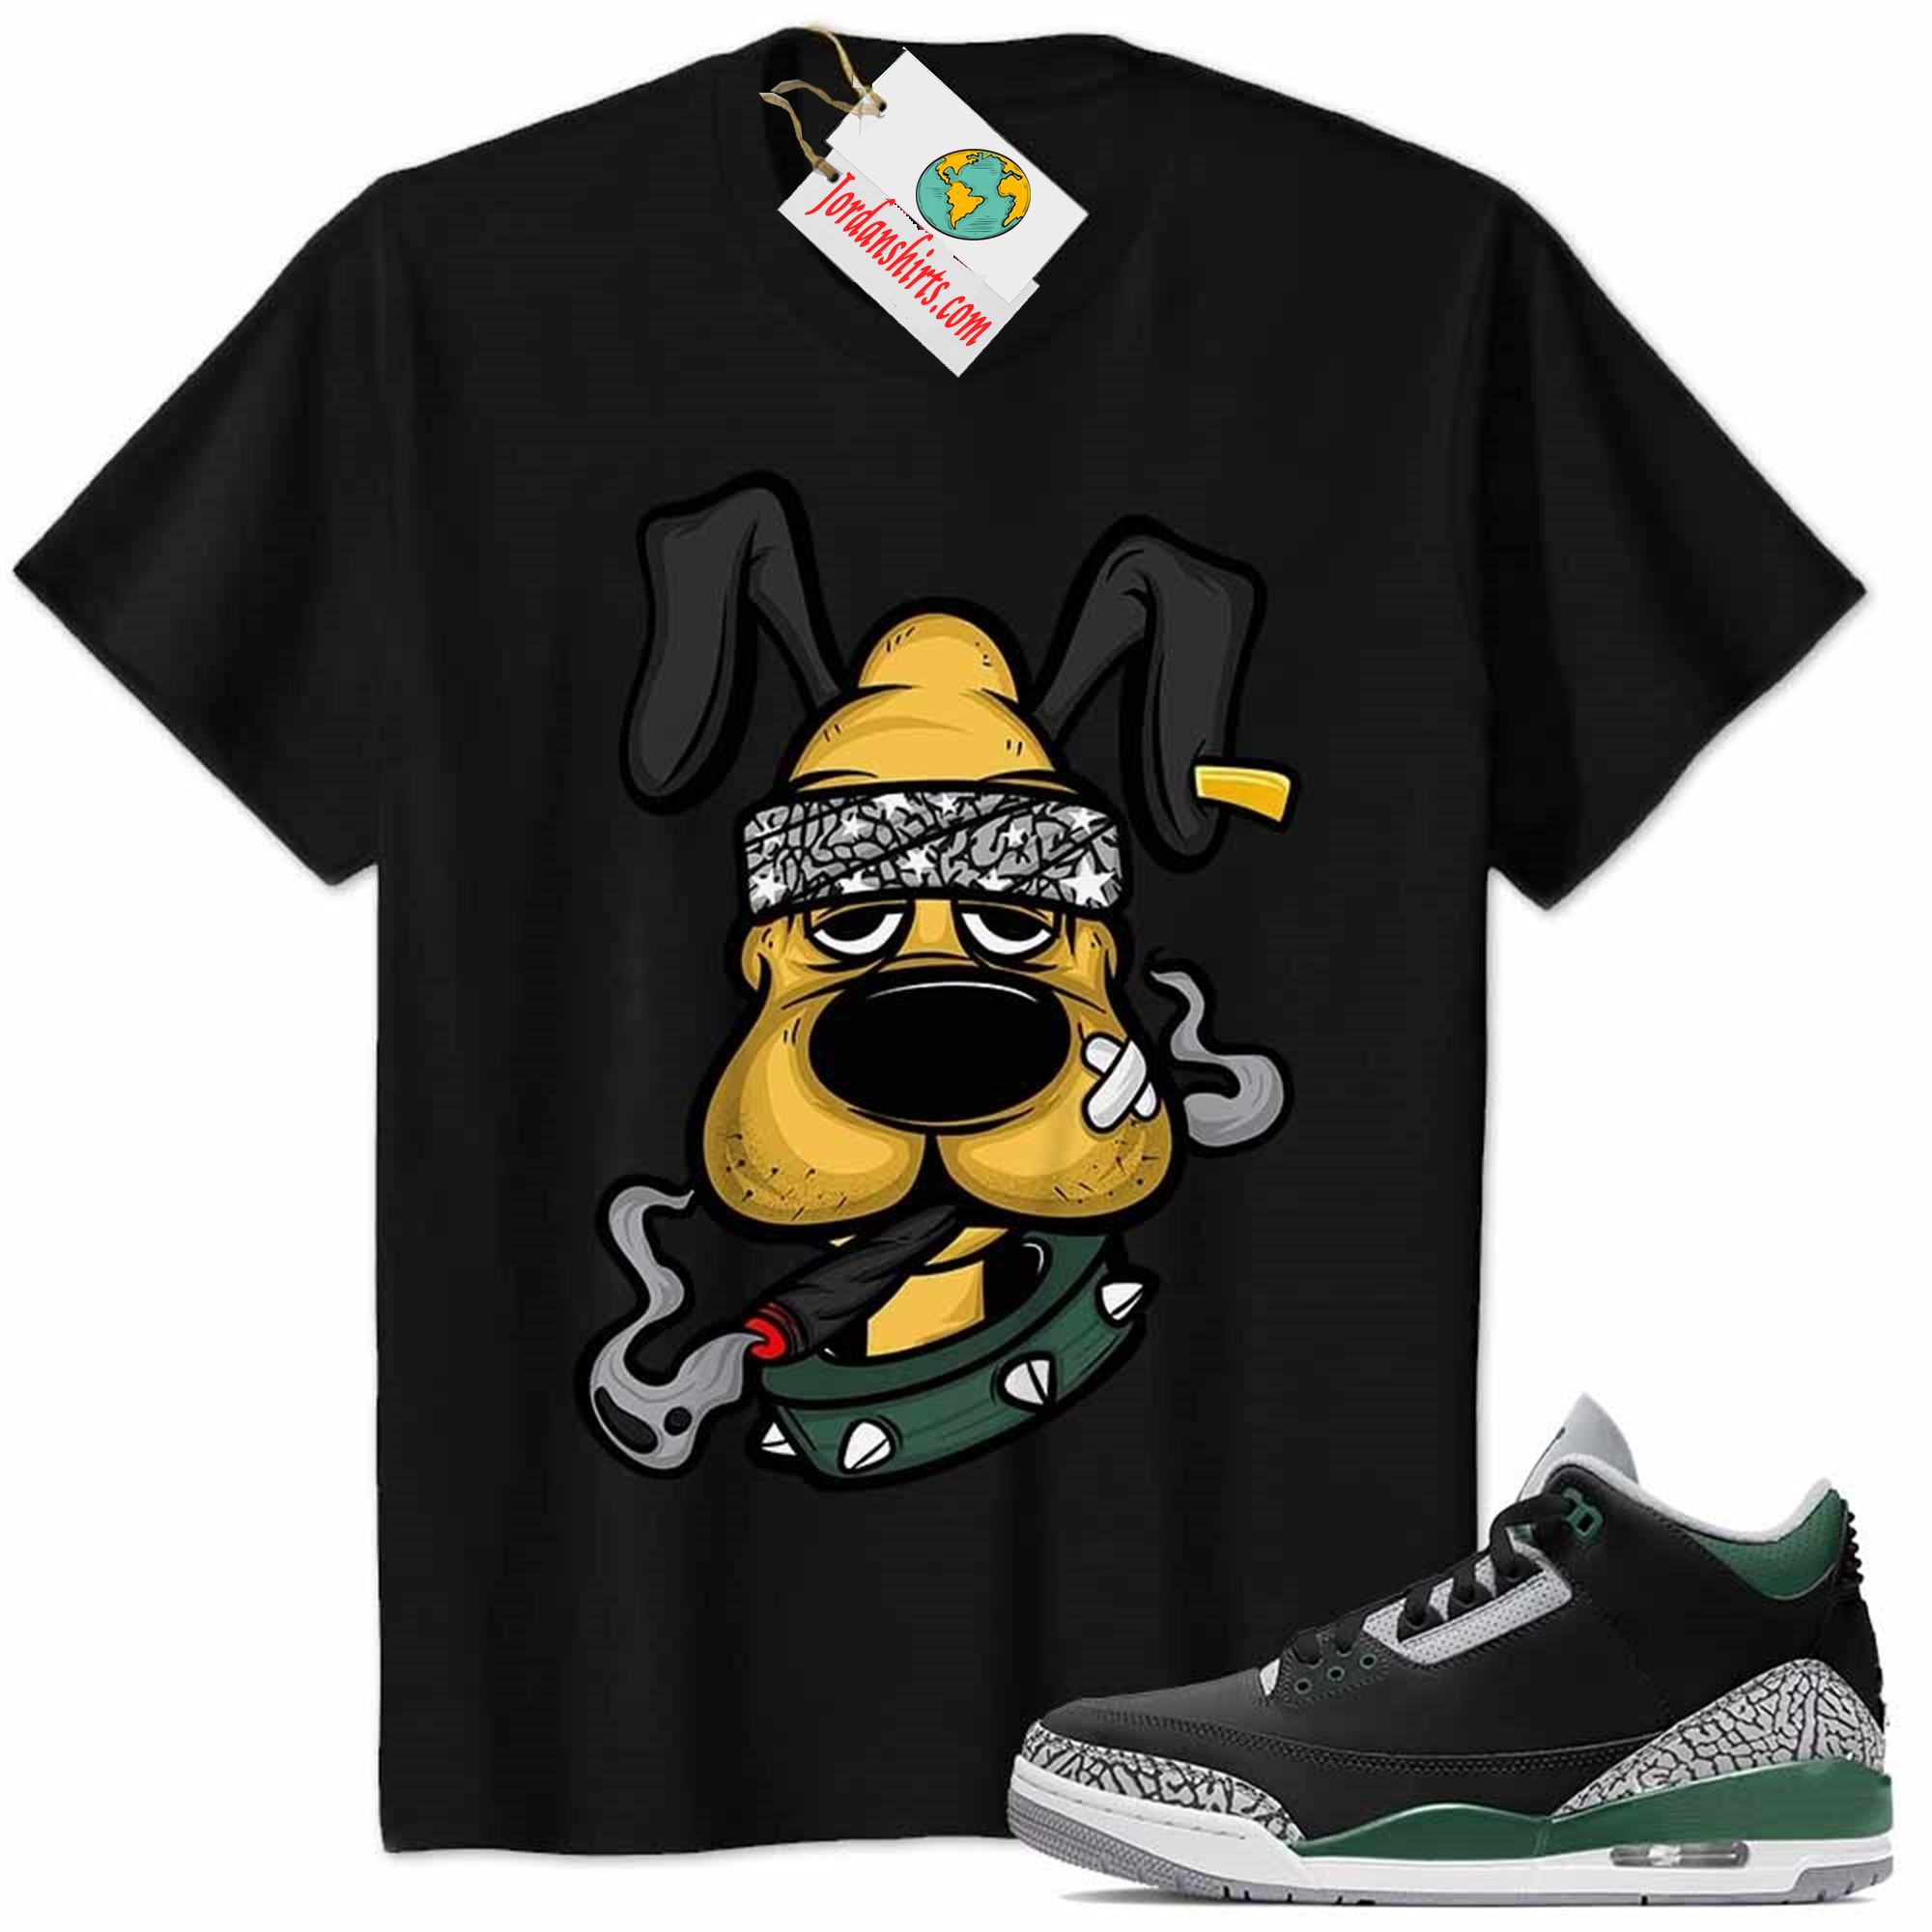 Jordan 3 Shirt, Gangster Pluto Smoke Weed Black Air Jordan 3 Pine Green 3s Size Up To 5xl